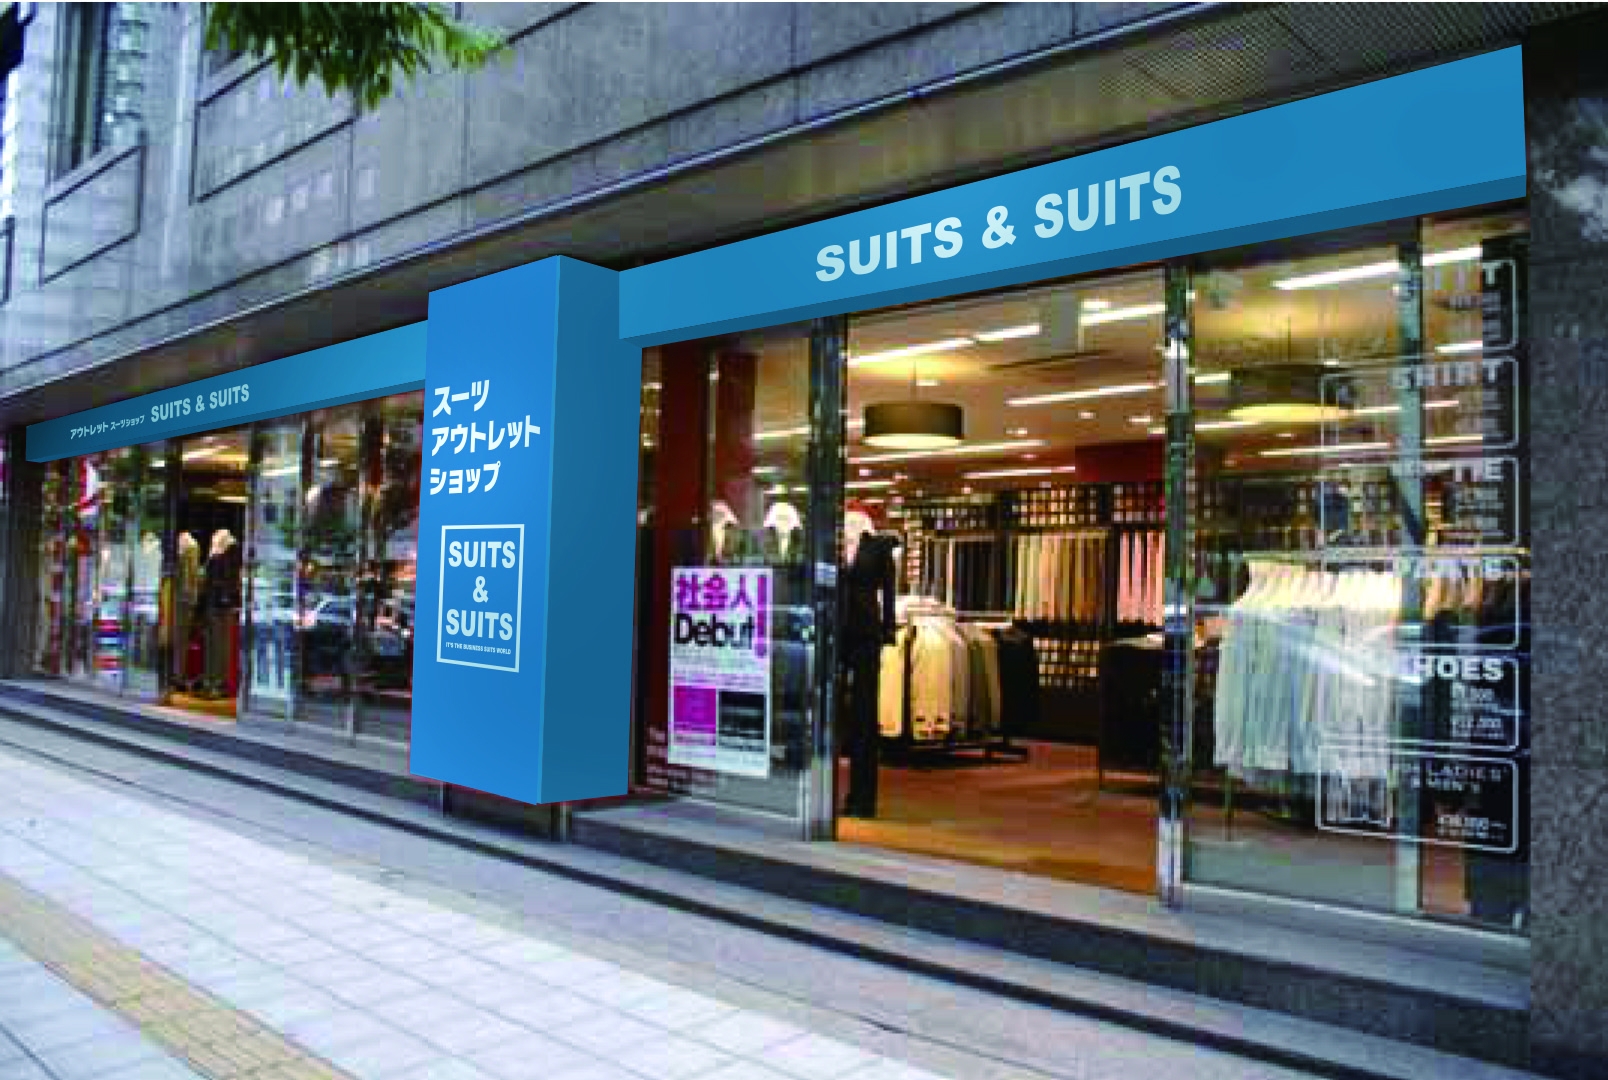 ビジネスマンを応援するonlyのスーツアウトレット Suit Suits が日本各地で続々オープン 株式会社 オンリーのプレスリリース